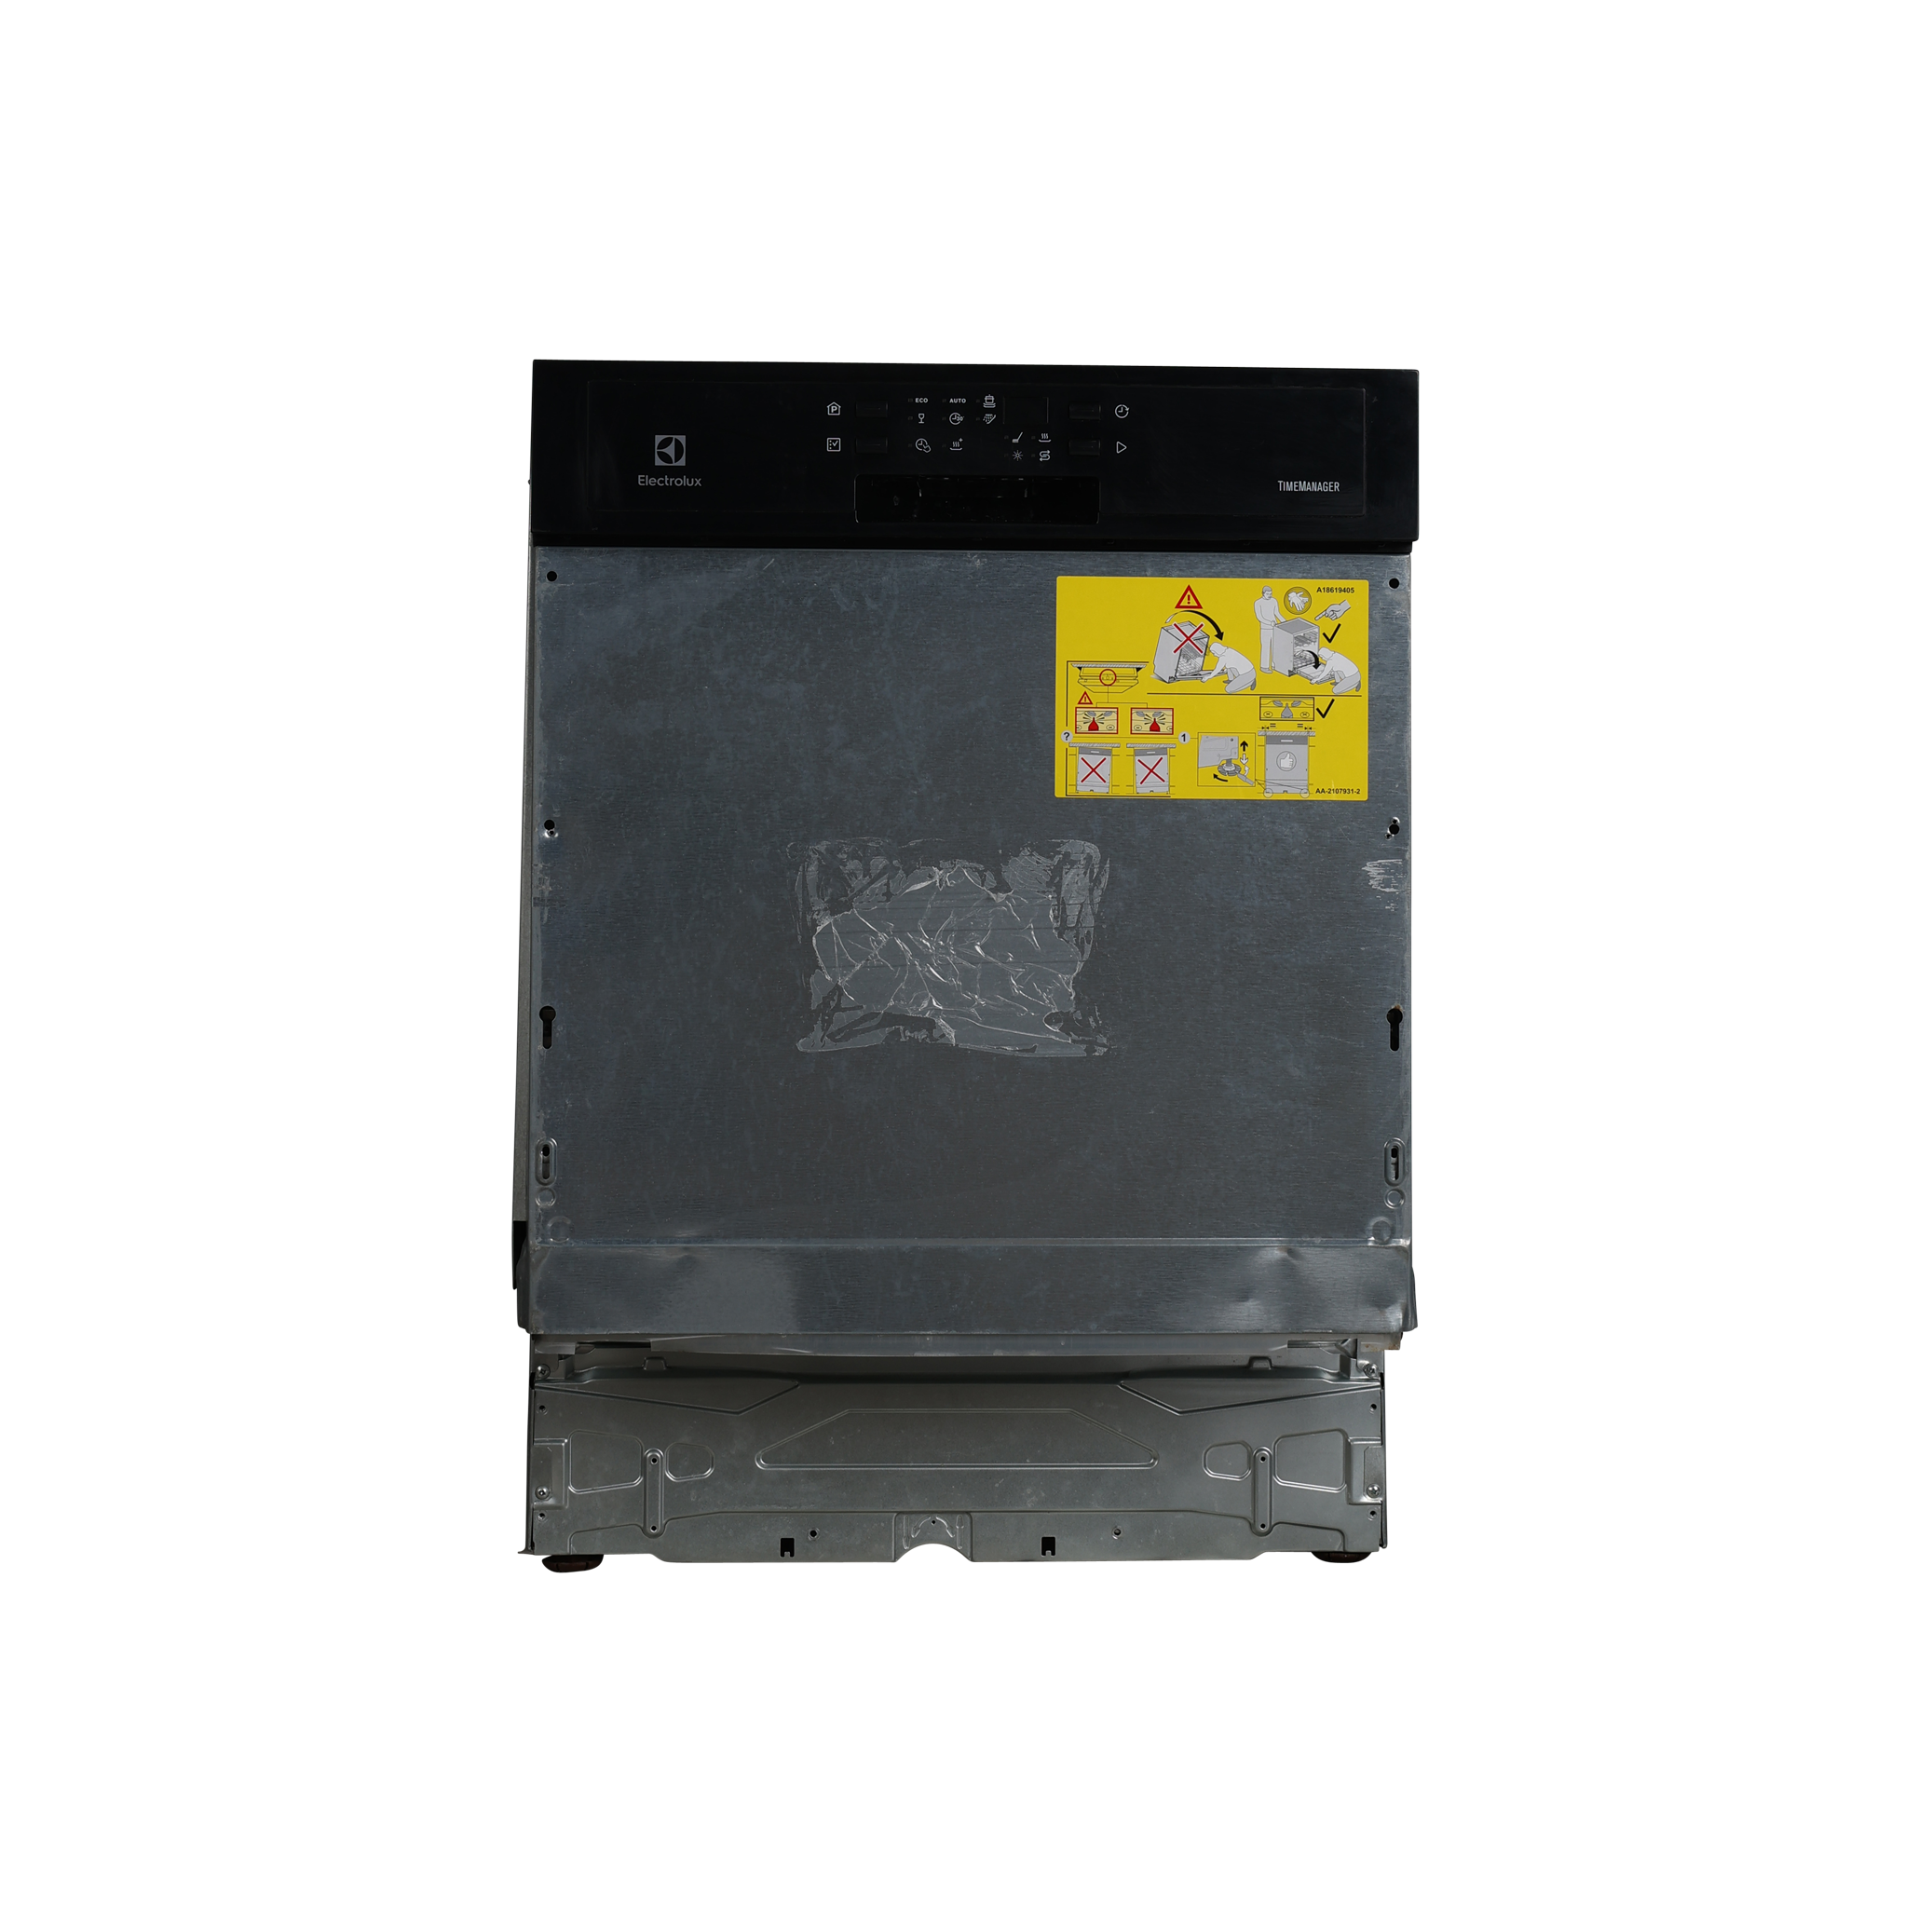 Lave-vaisselle encastrable l.59.6 cm ELECTROLUX 911536437, 13